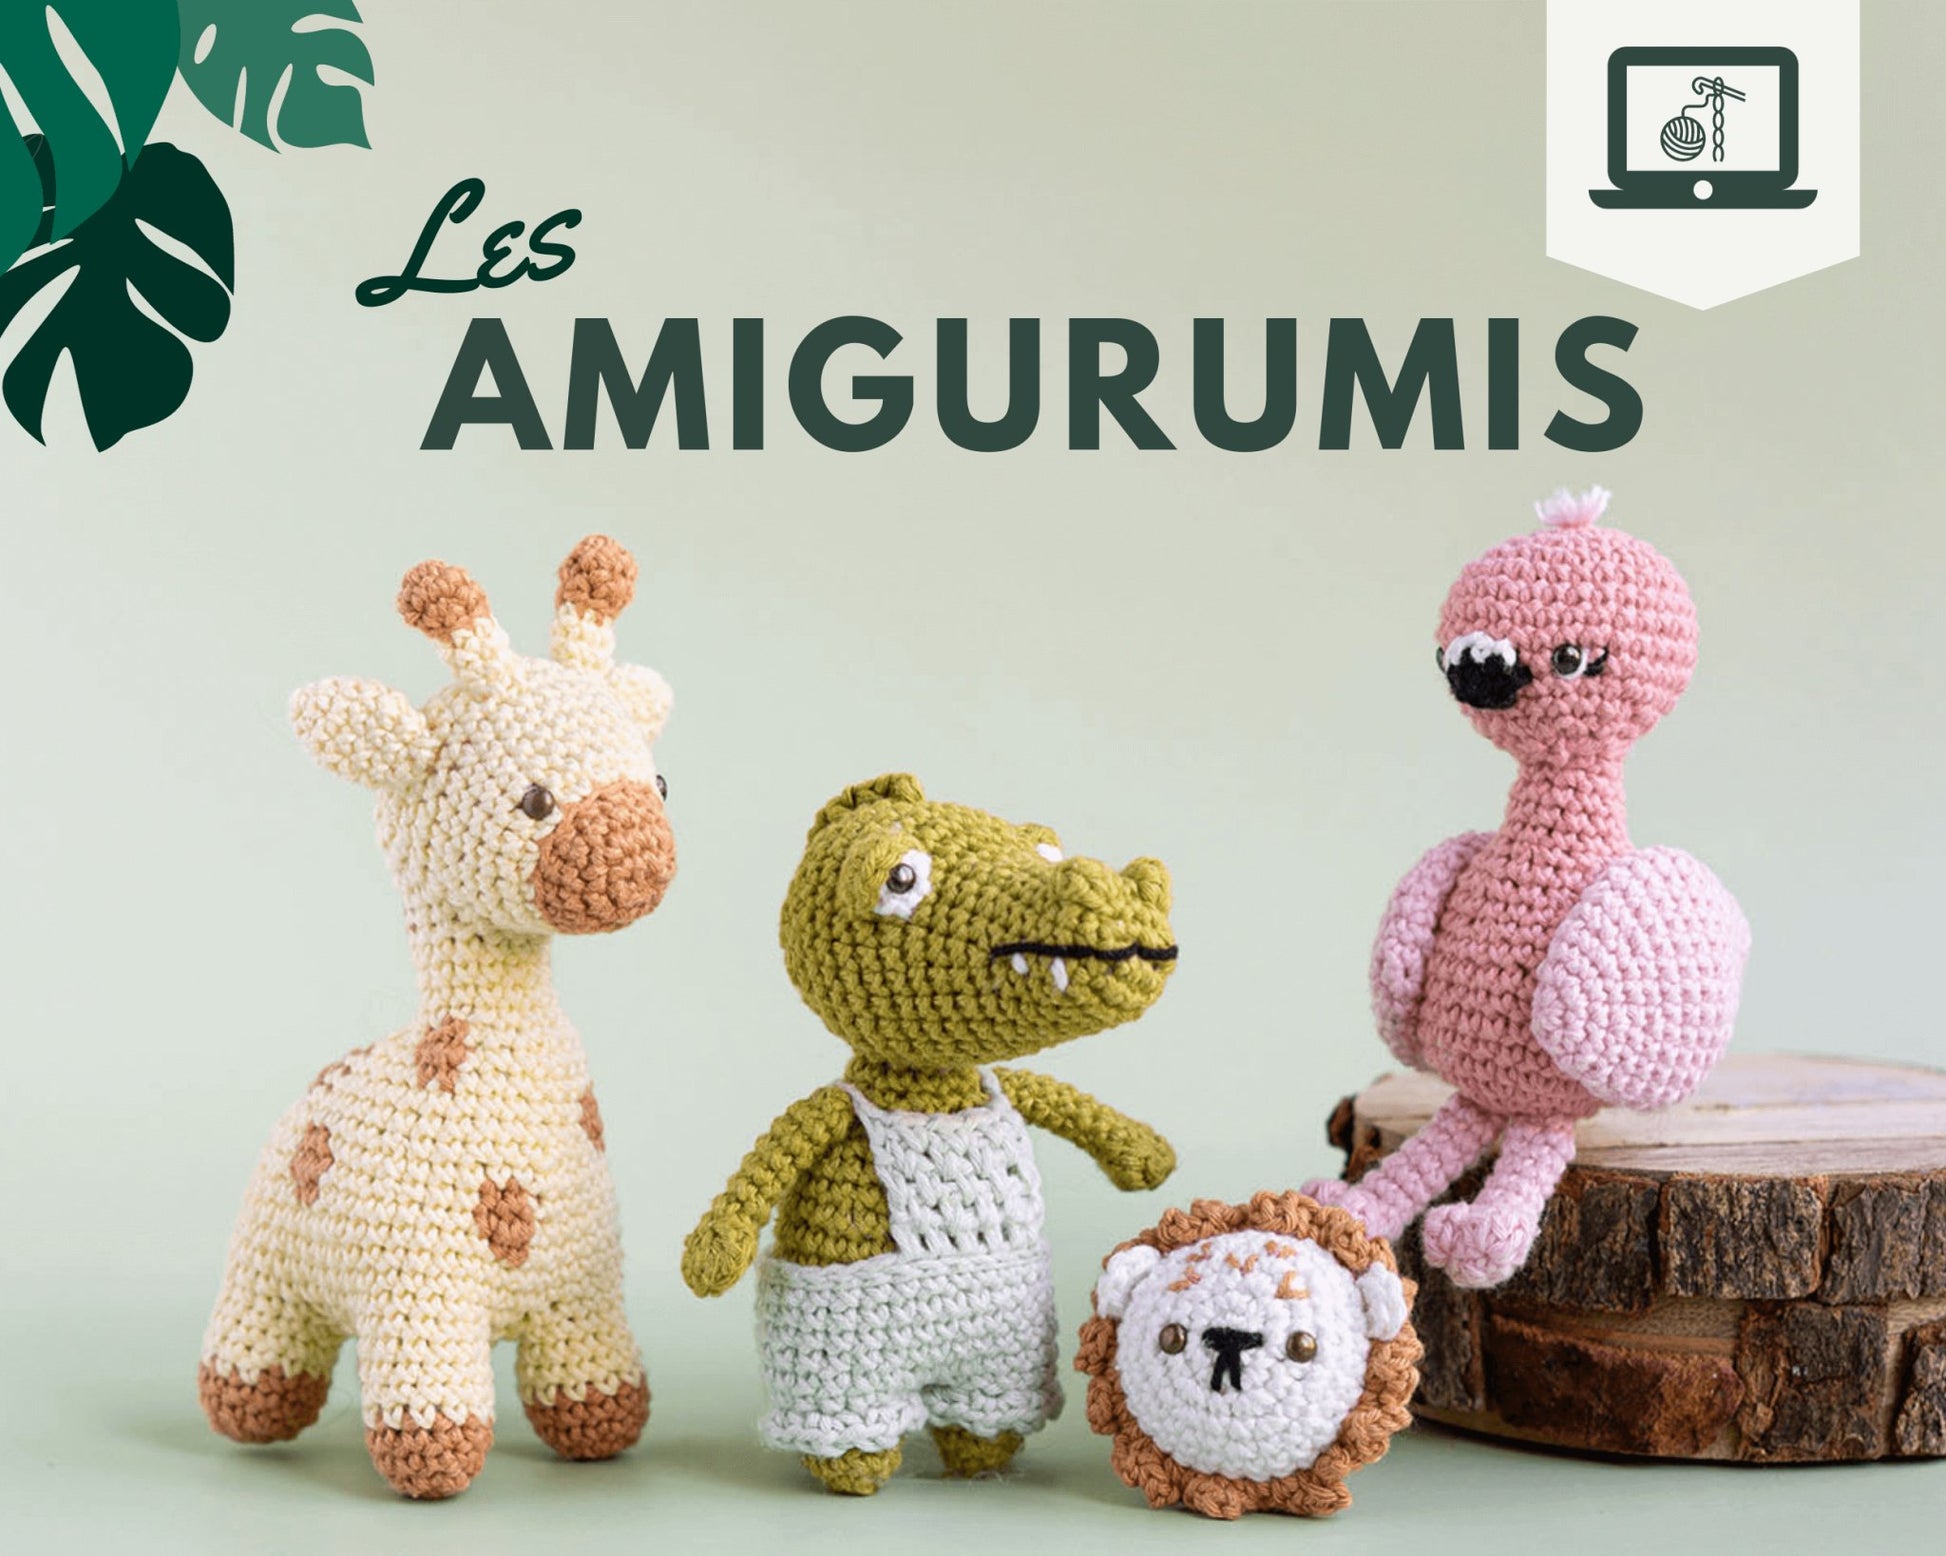 Cours de crochet "Les Amigurumis" - Crochetmilie